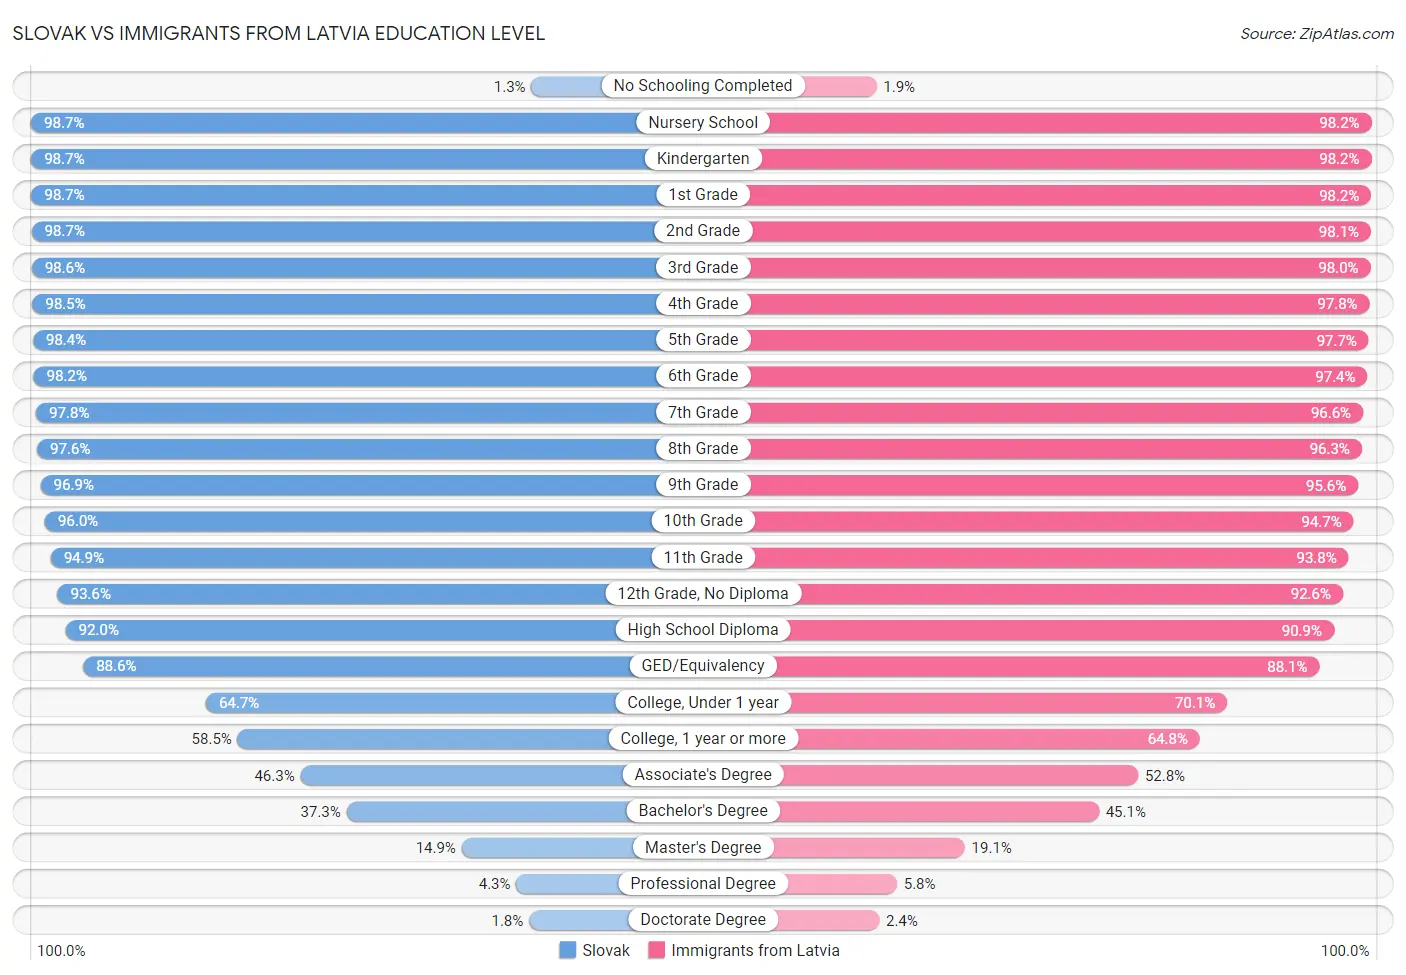 Slovak vs Immigrants from Latvia Education Level